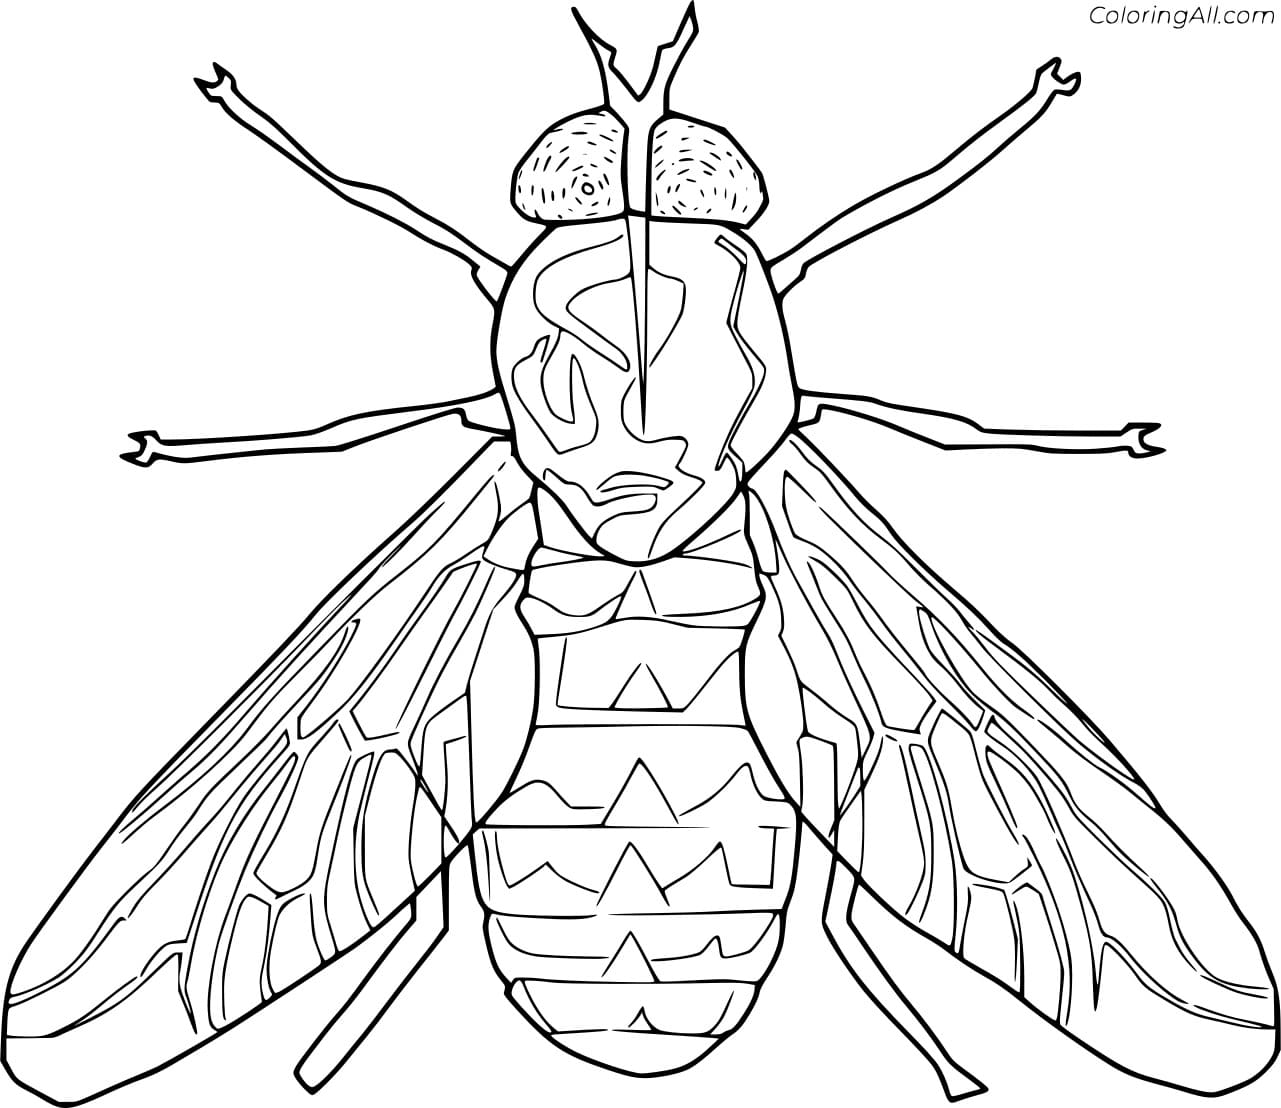 Flesh Fly Image